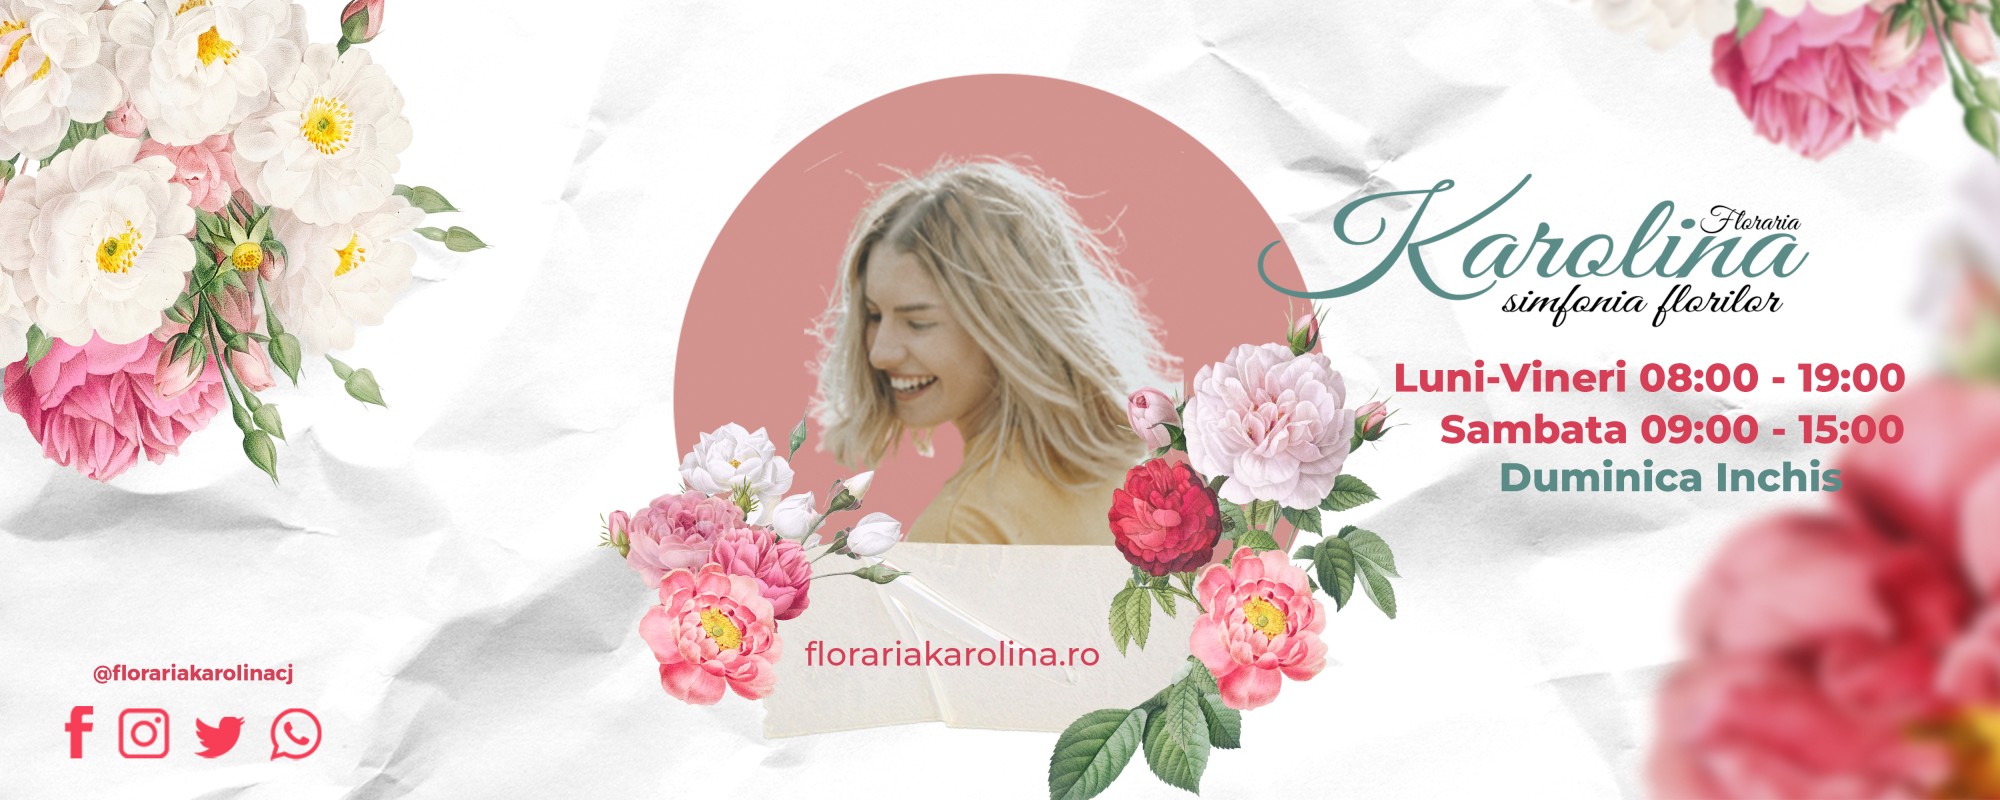 Floraria Karolina